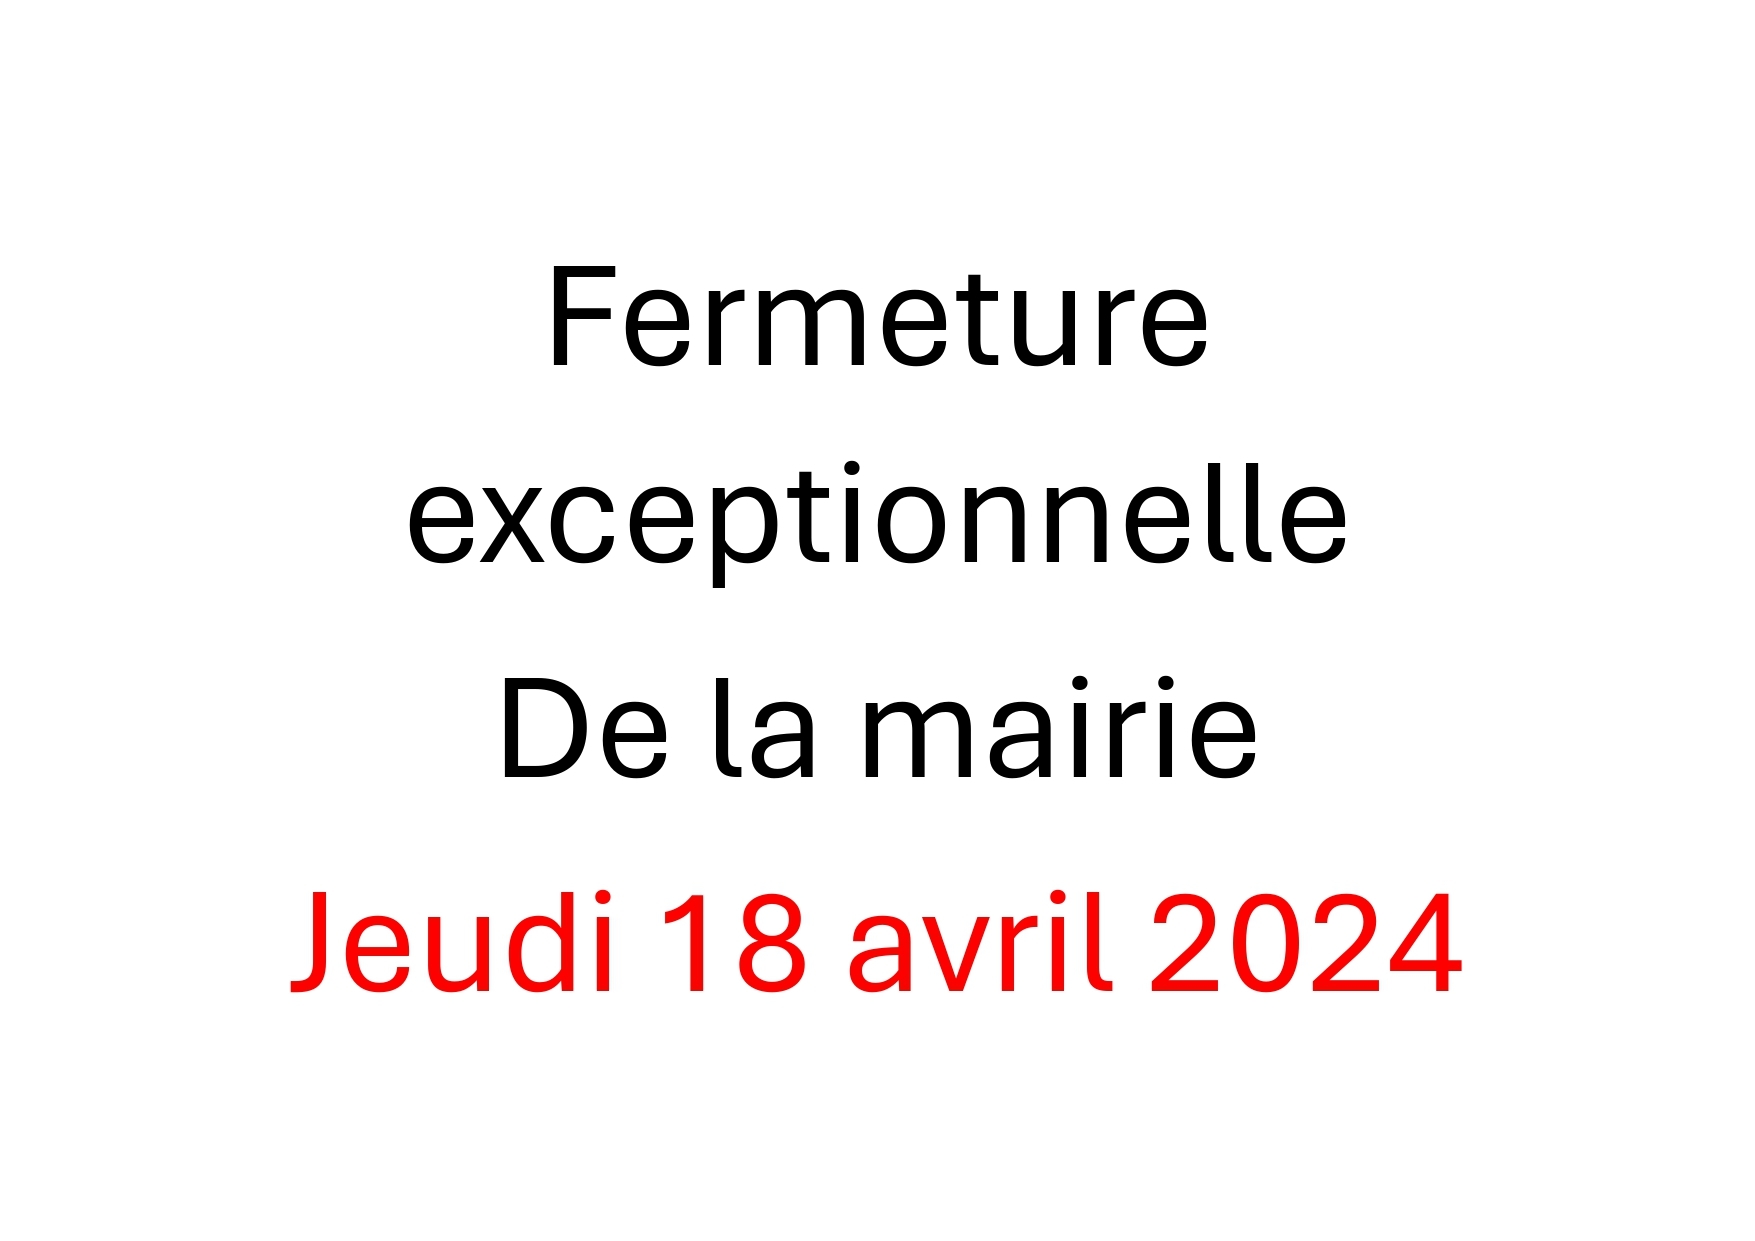 FERMETURE EXCEPTIONNELLE DE LA MAIRIE POUR FORMATION DE TOUS LES AGENTS CE JEUDI 18 AVRIL 2024